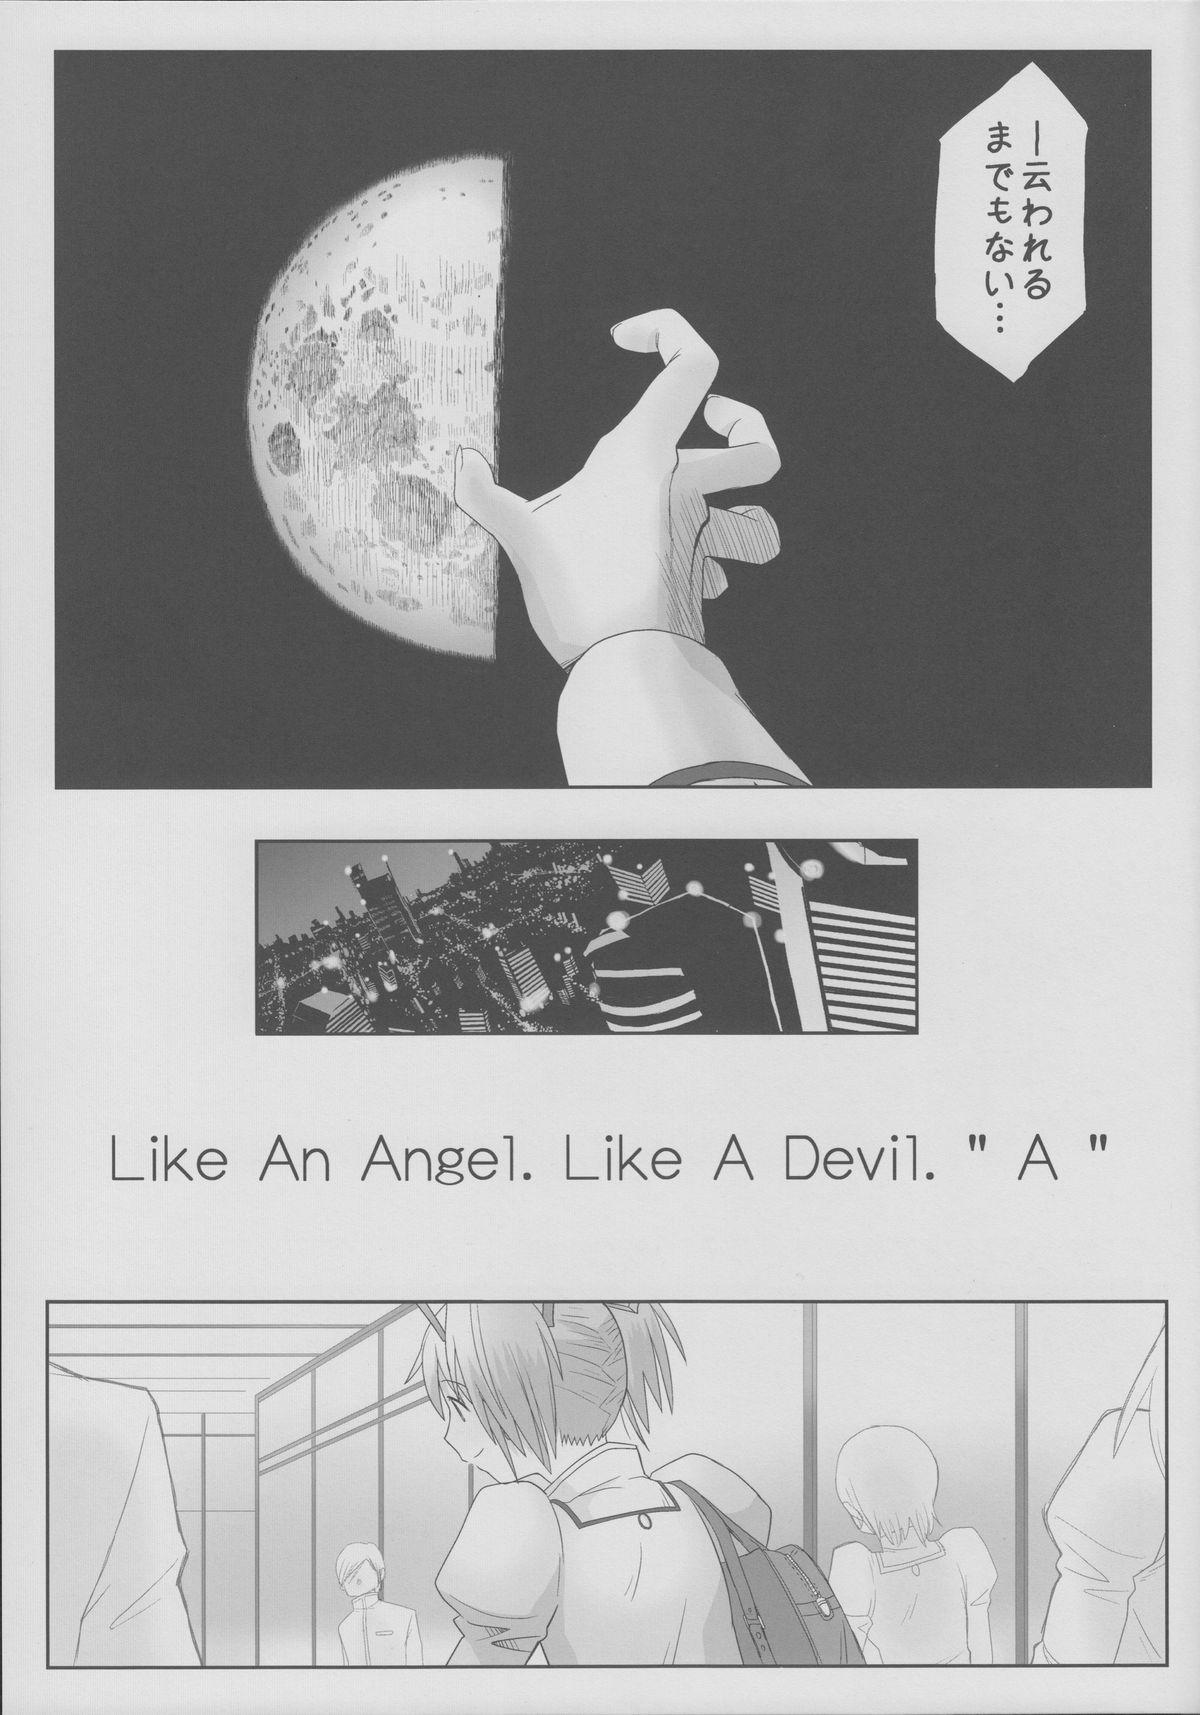 Like An Angel. Like A Devil. "A" 7